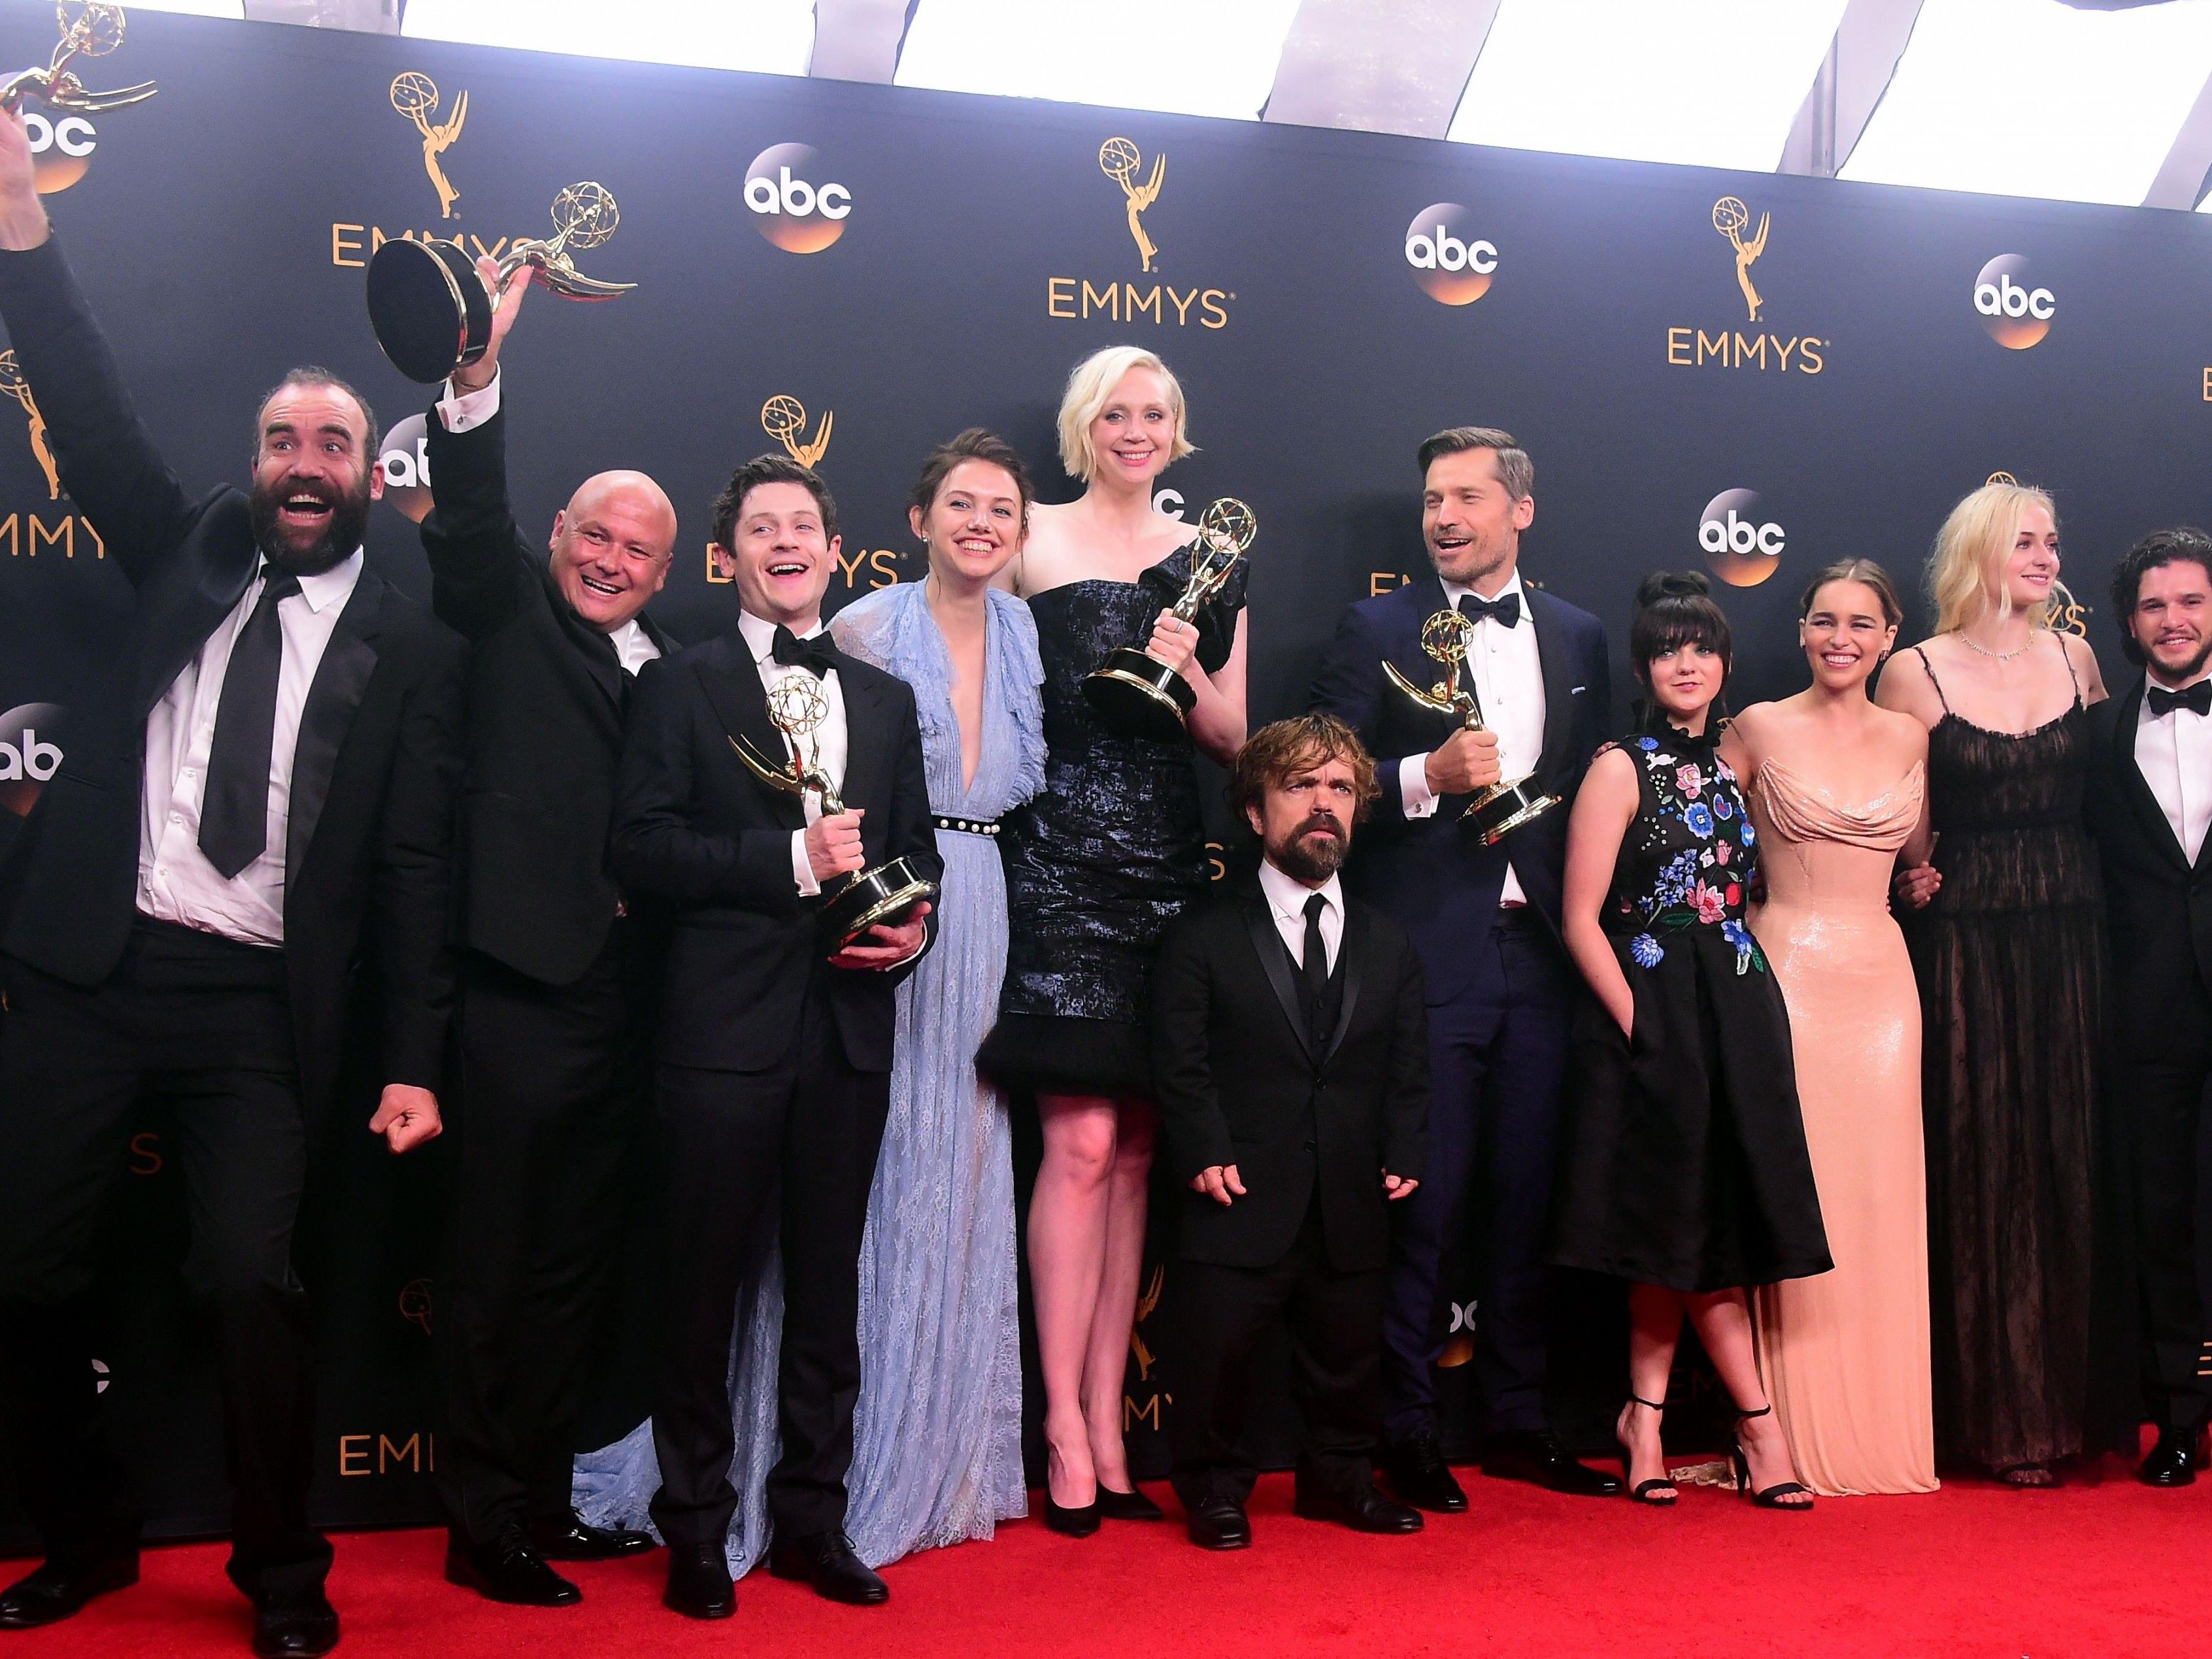 Die gesamte GoT Crew bei den 68th Emmy Awards im September 2016.